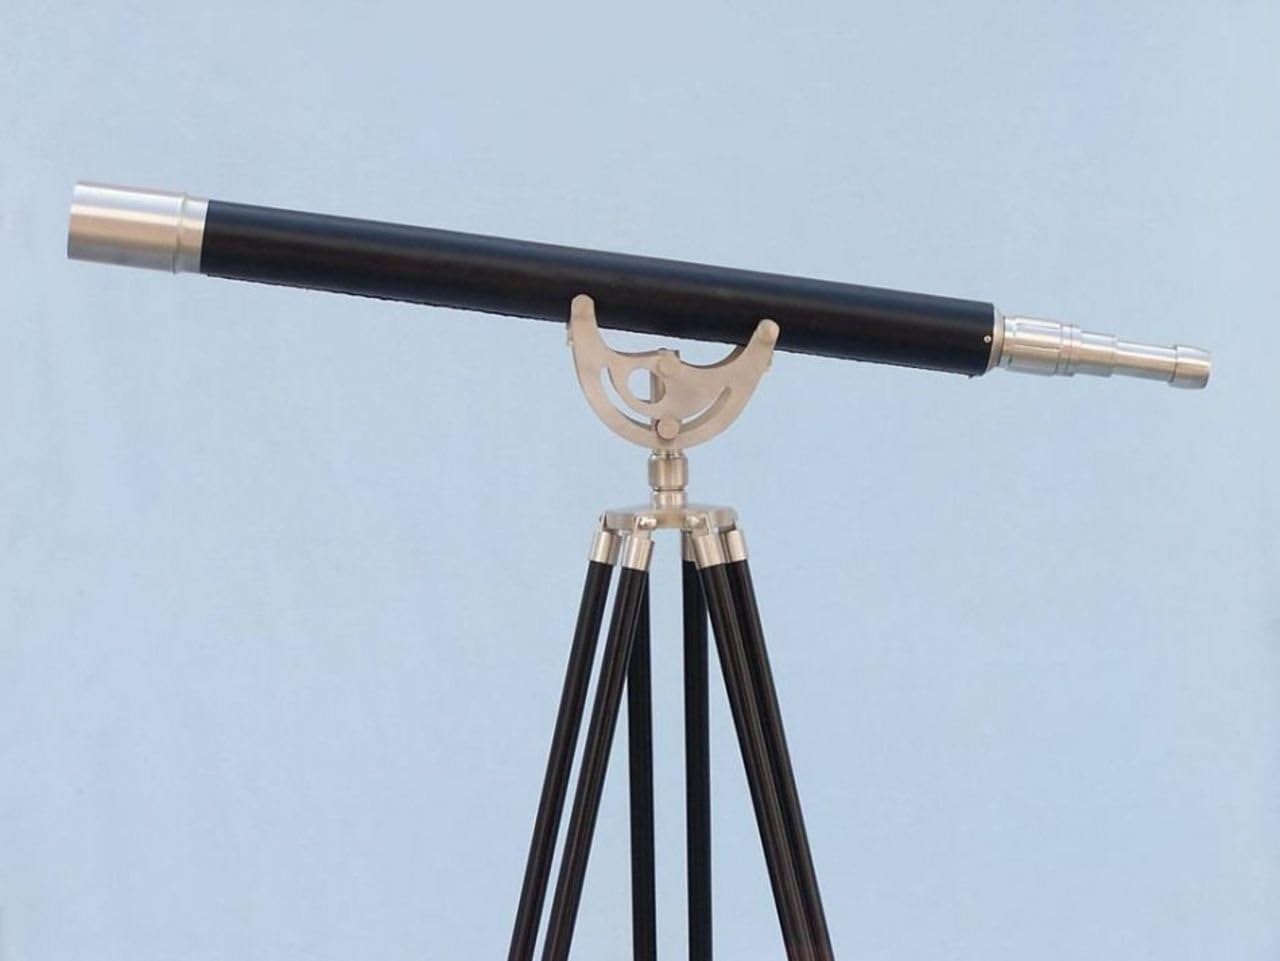 Hampton Nautical 65-inch Floor Standing Nickel/Leather Anchormaster Telescope - $195